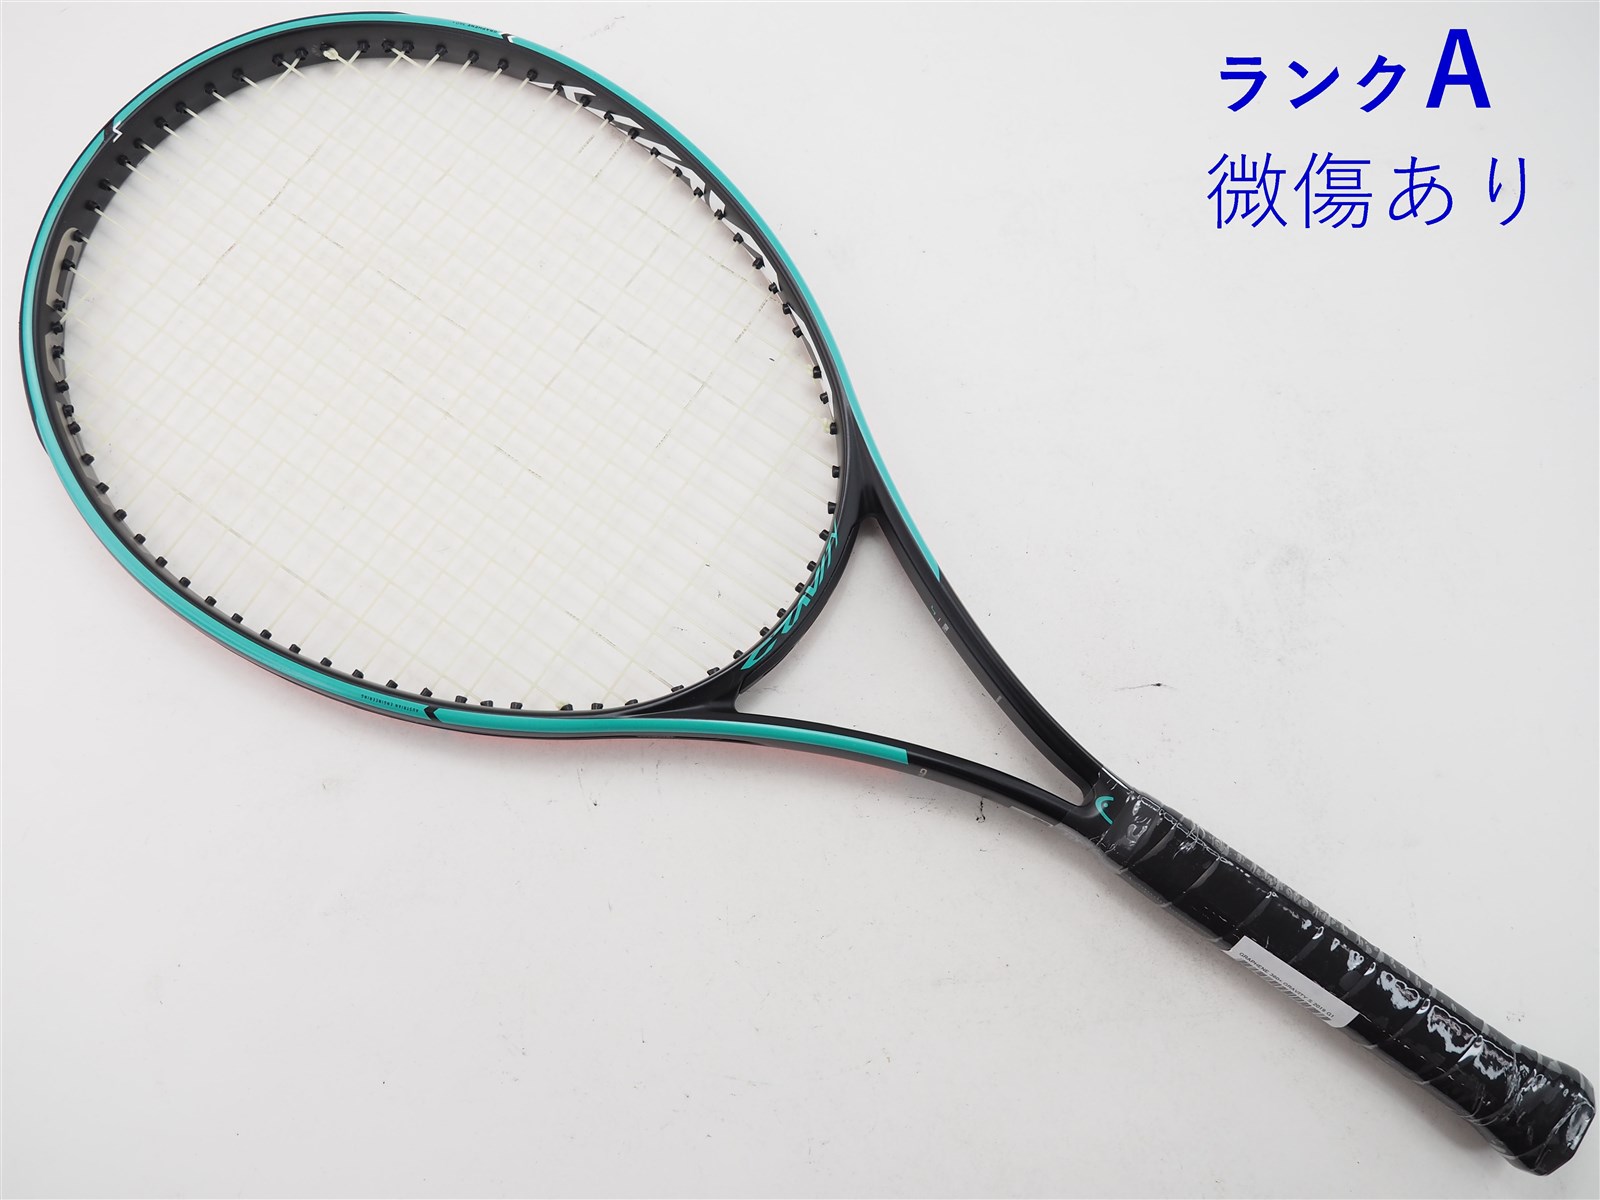 テニスラケット ヘッド グラフィン 360プラス グラビティー エス 2019年モデル (G2)HEAD GRAPHENE 360+ GRAVITY S 2019